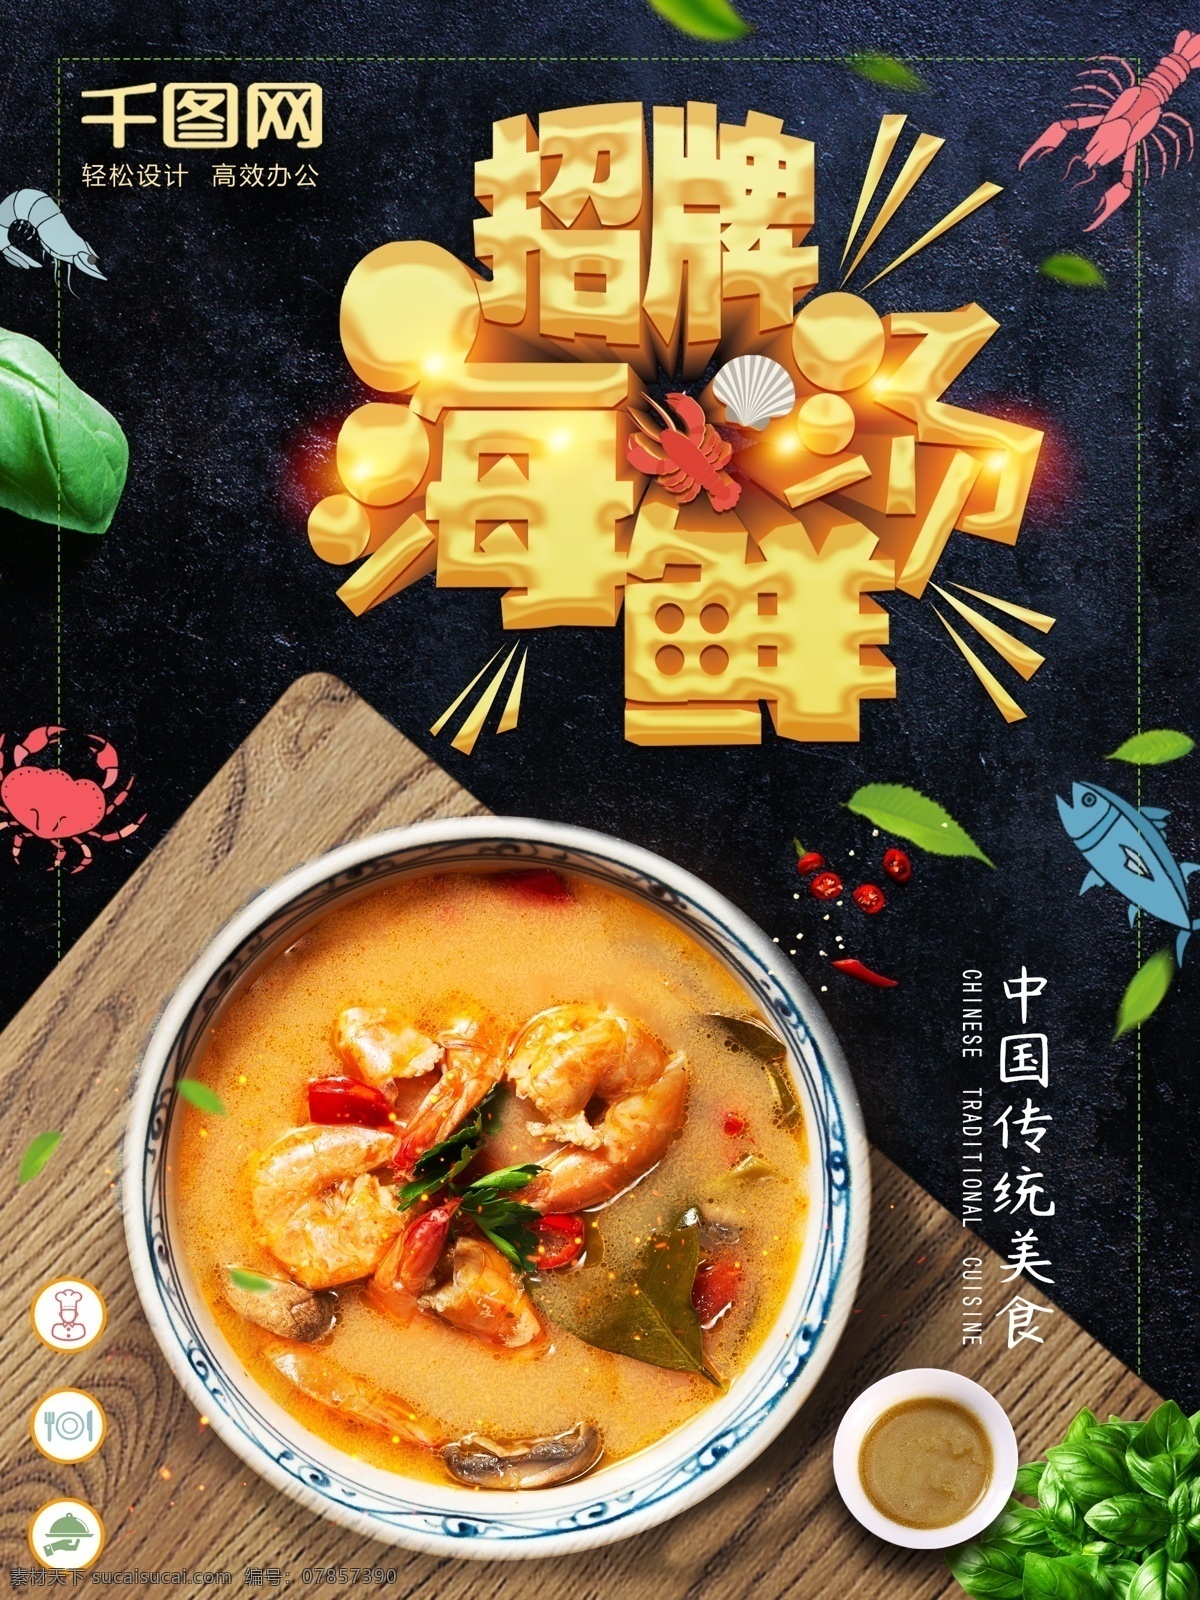 大气 创意 字体 招牌 海鲜 汤美 食 海报 海鲜汤 美食海报 大气美食海报 美食上新 中国美食 汤